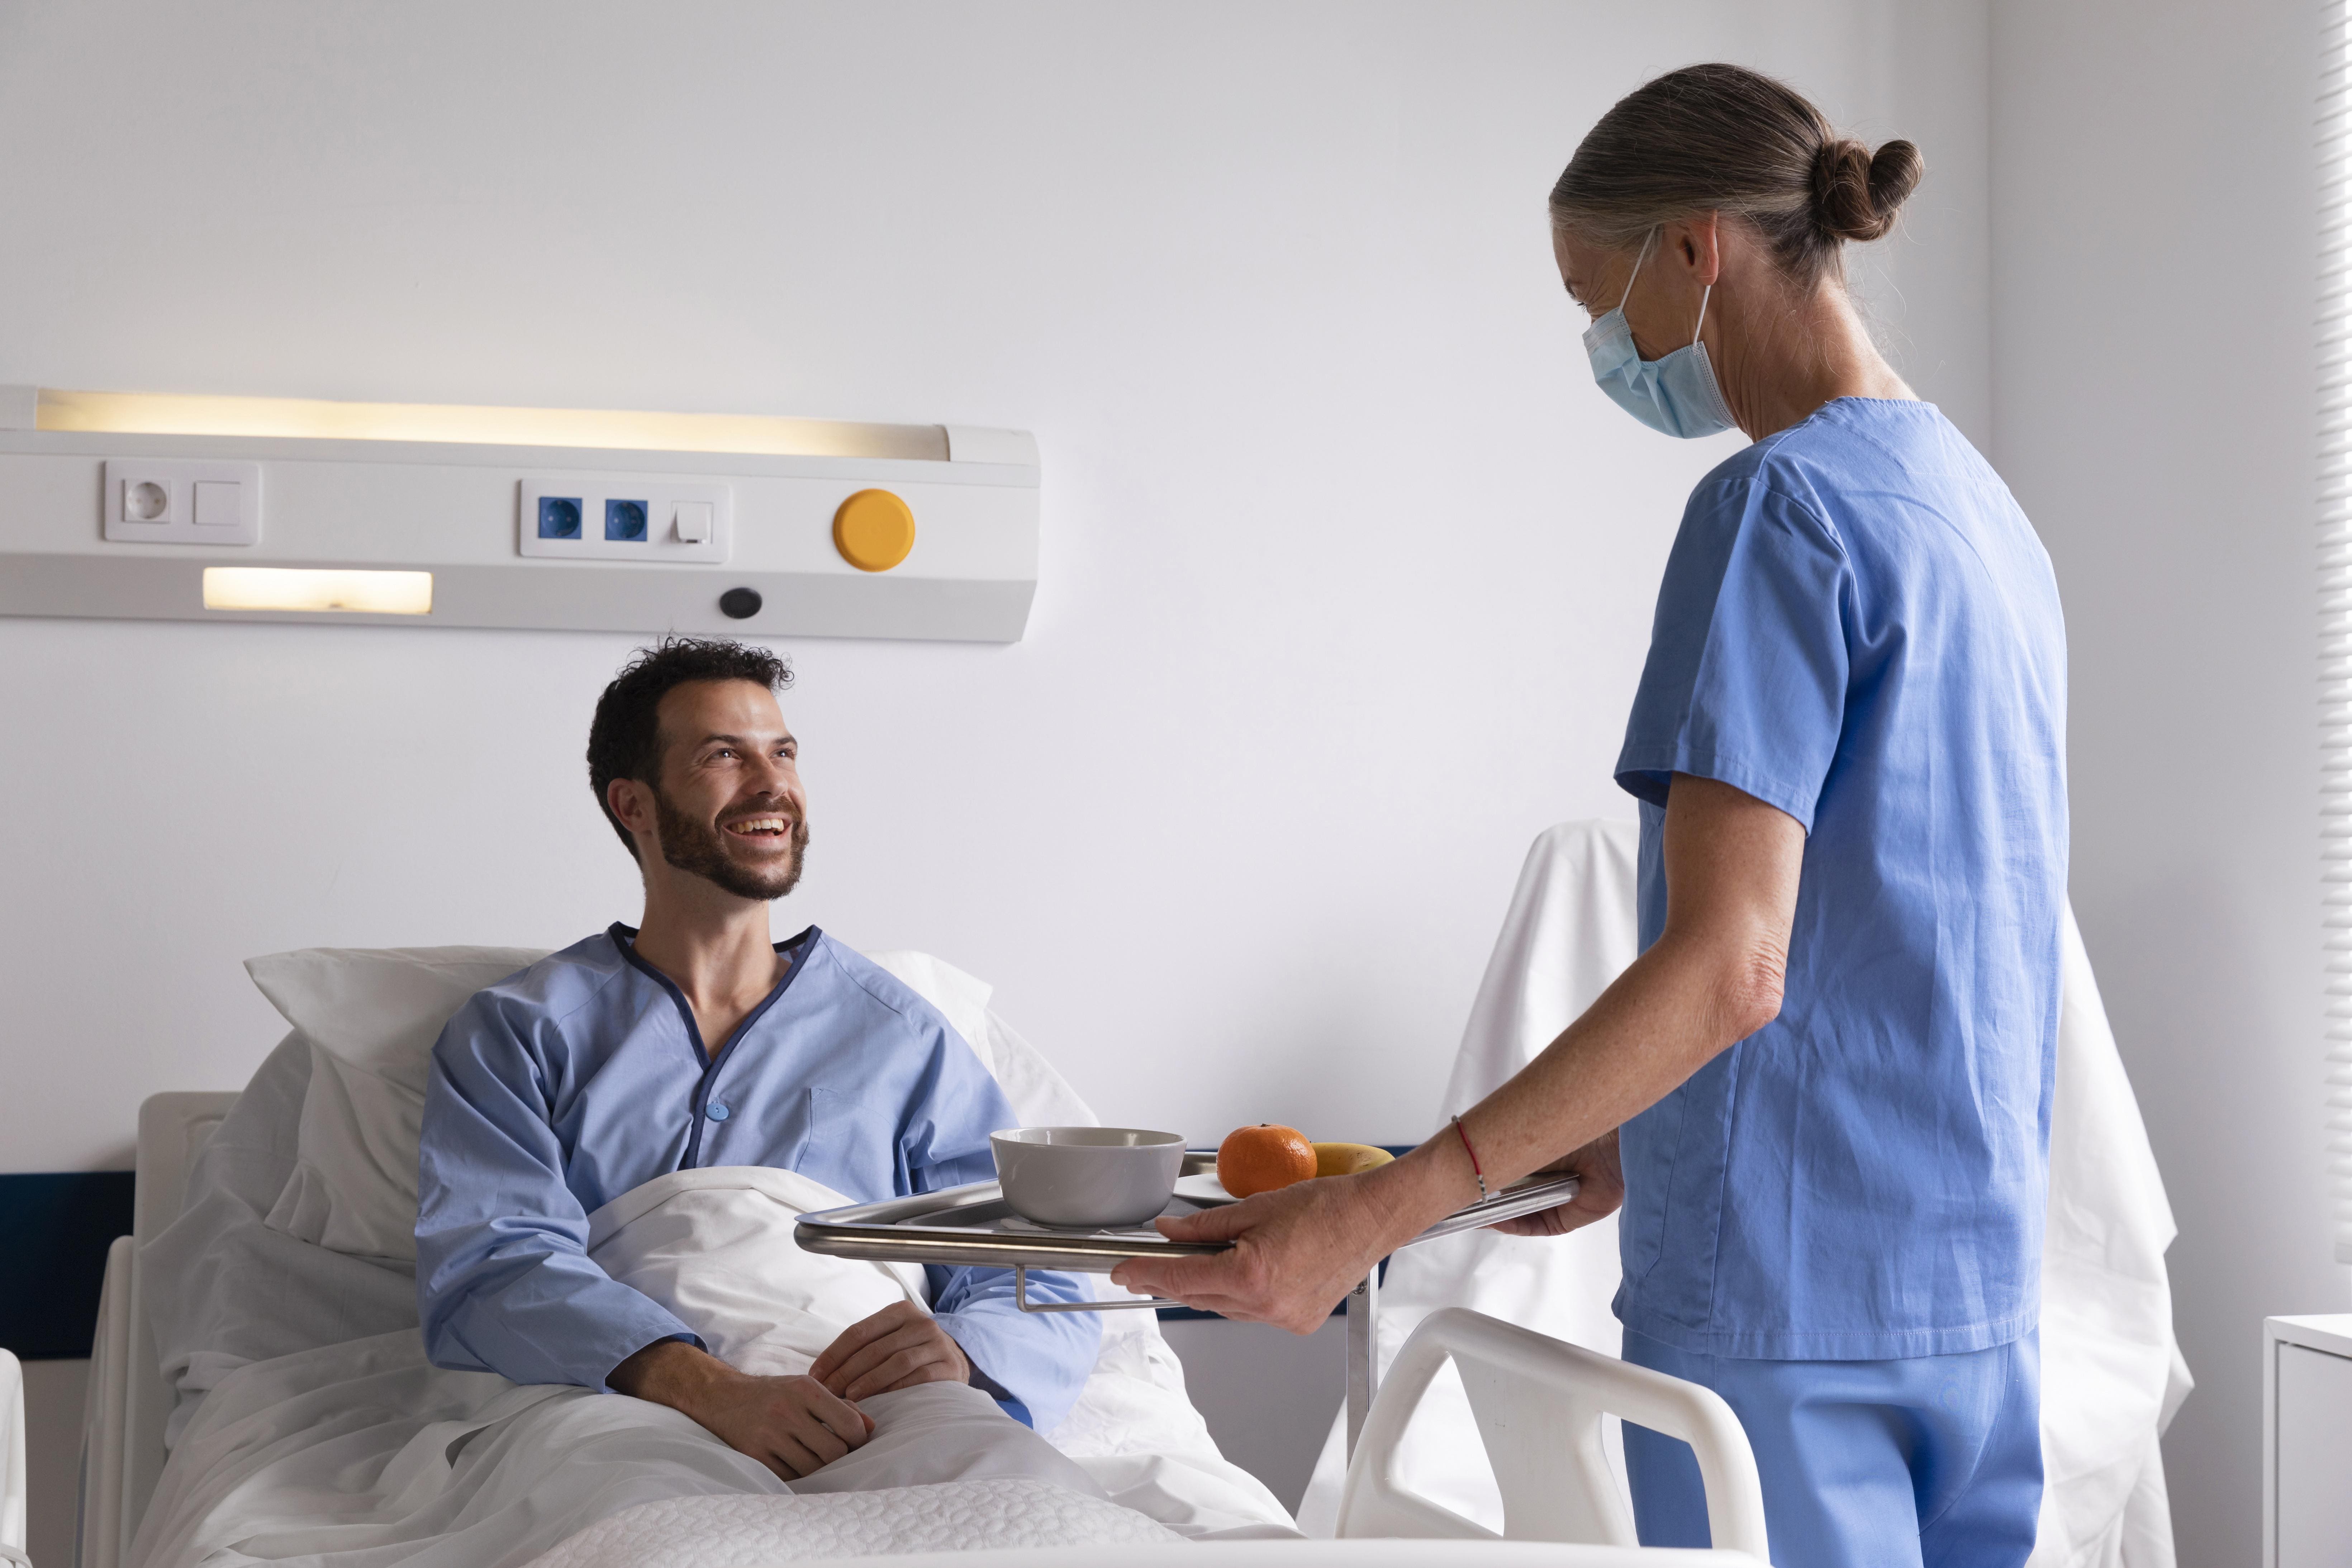 paciente recibe una alimentacion hospitalaria adecuada por parte del comedor industrial hospitalario